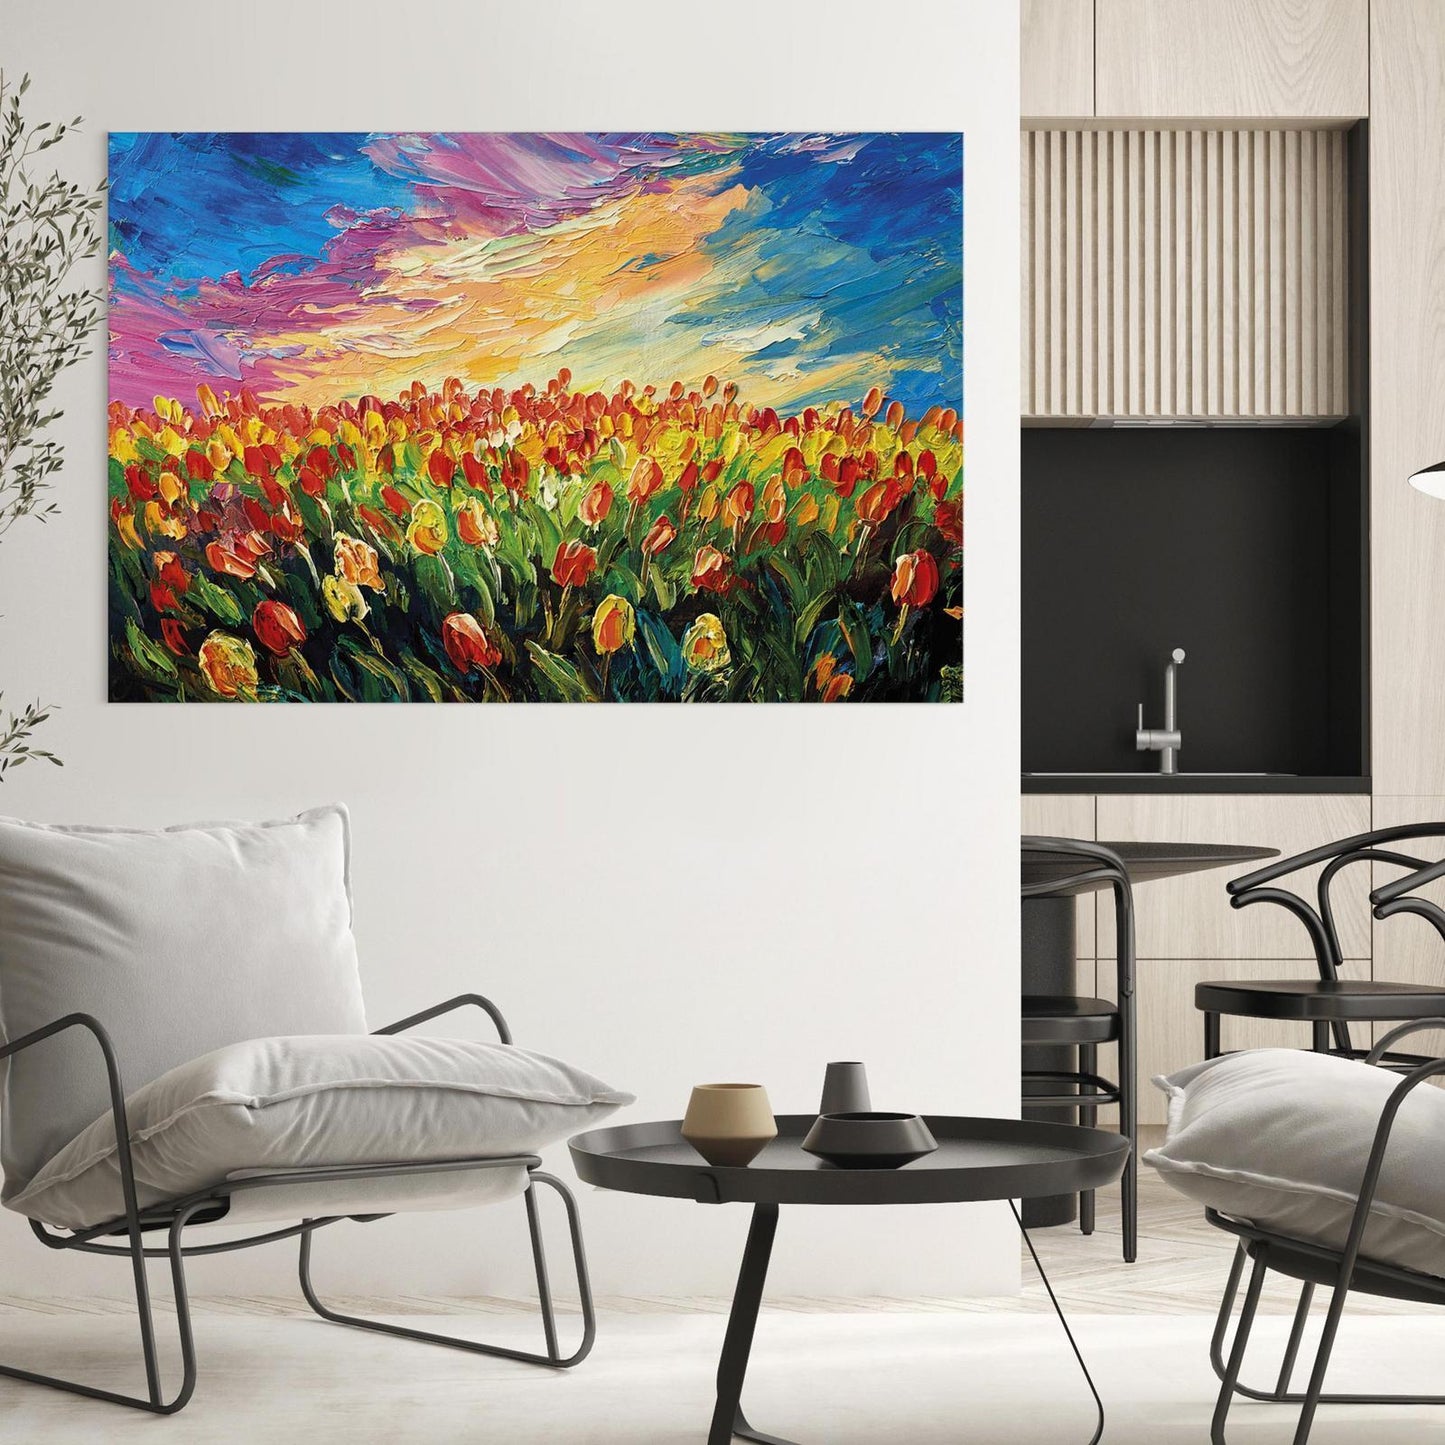 Gemälde - Tulpenmeer